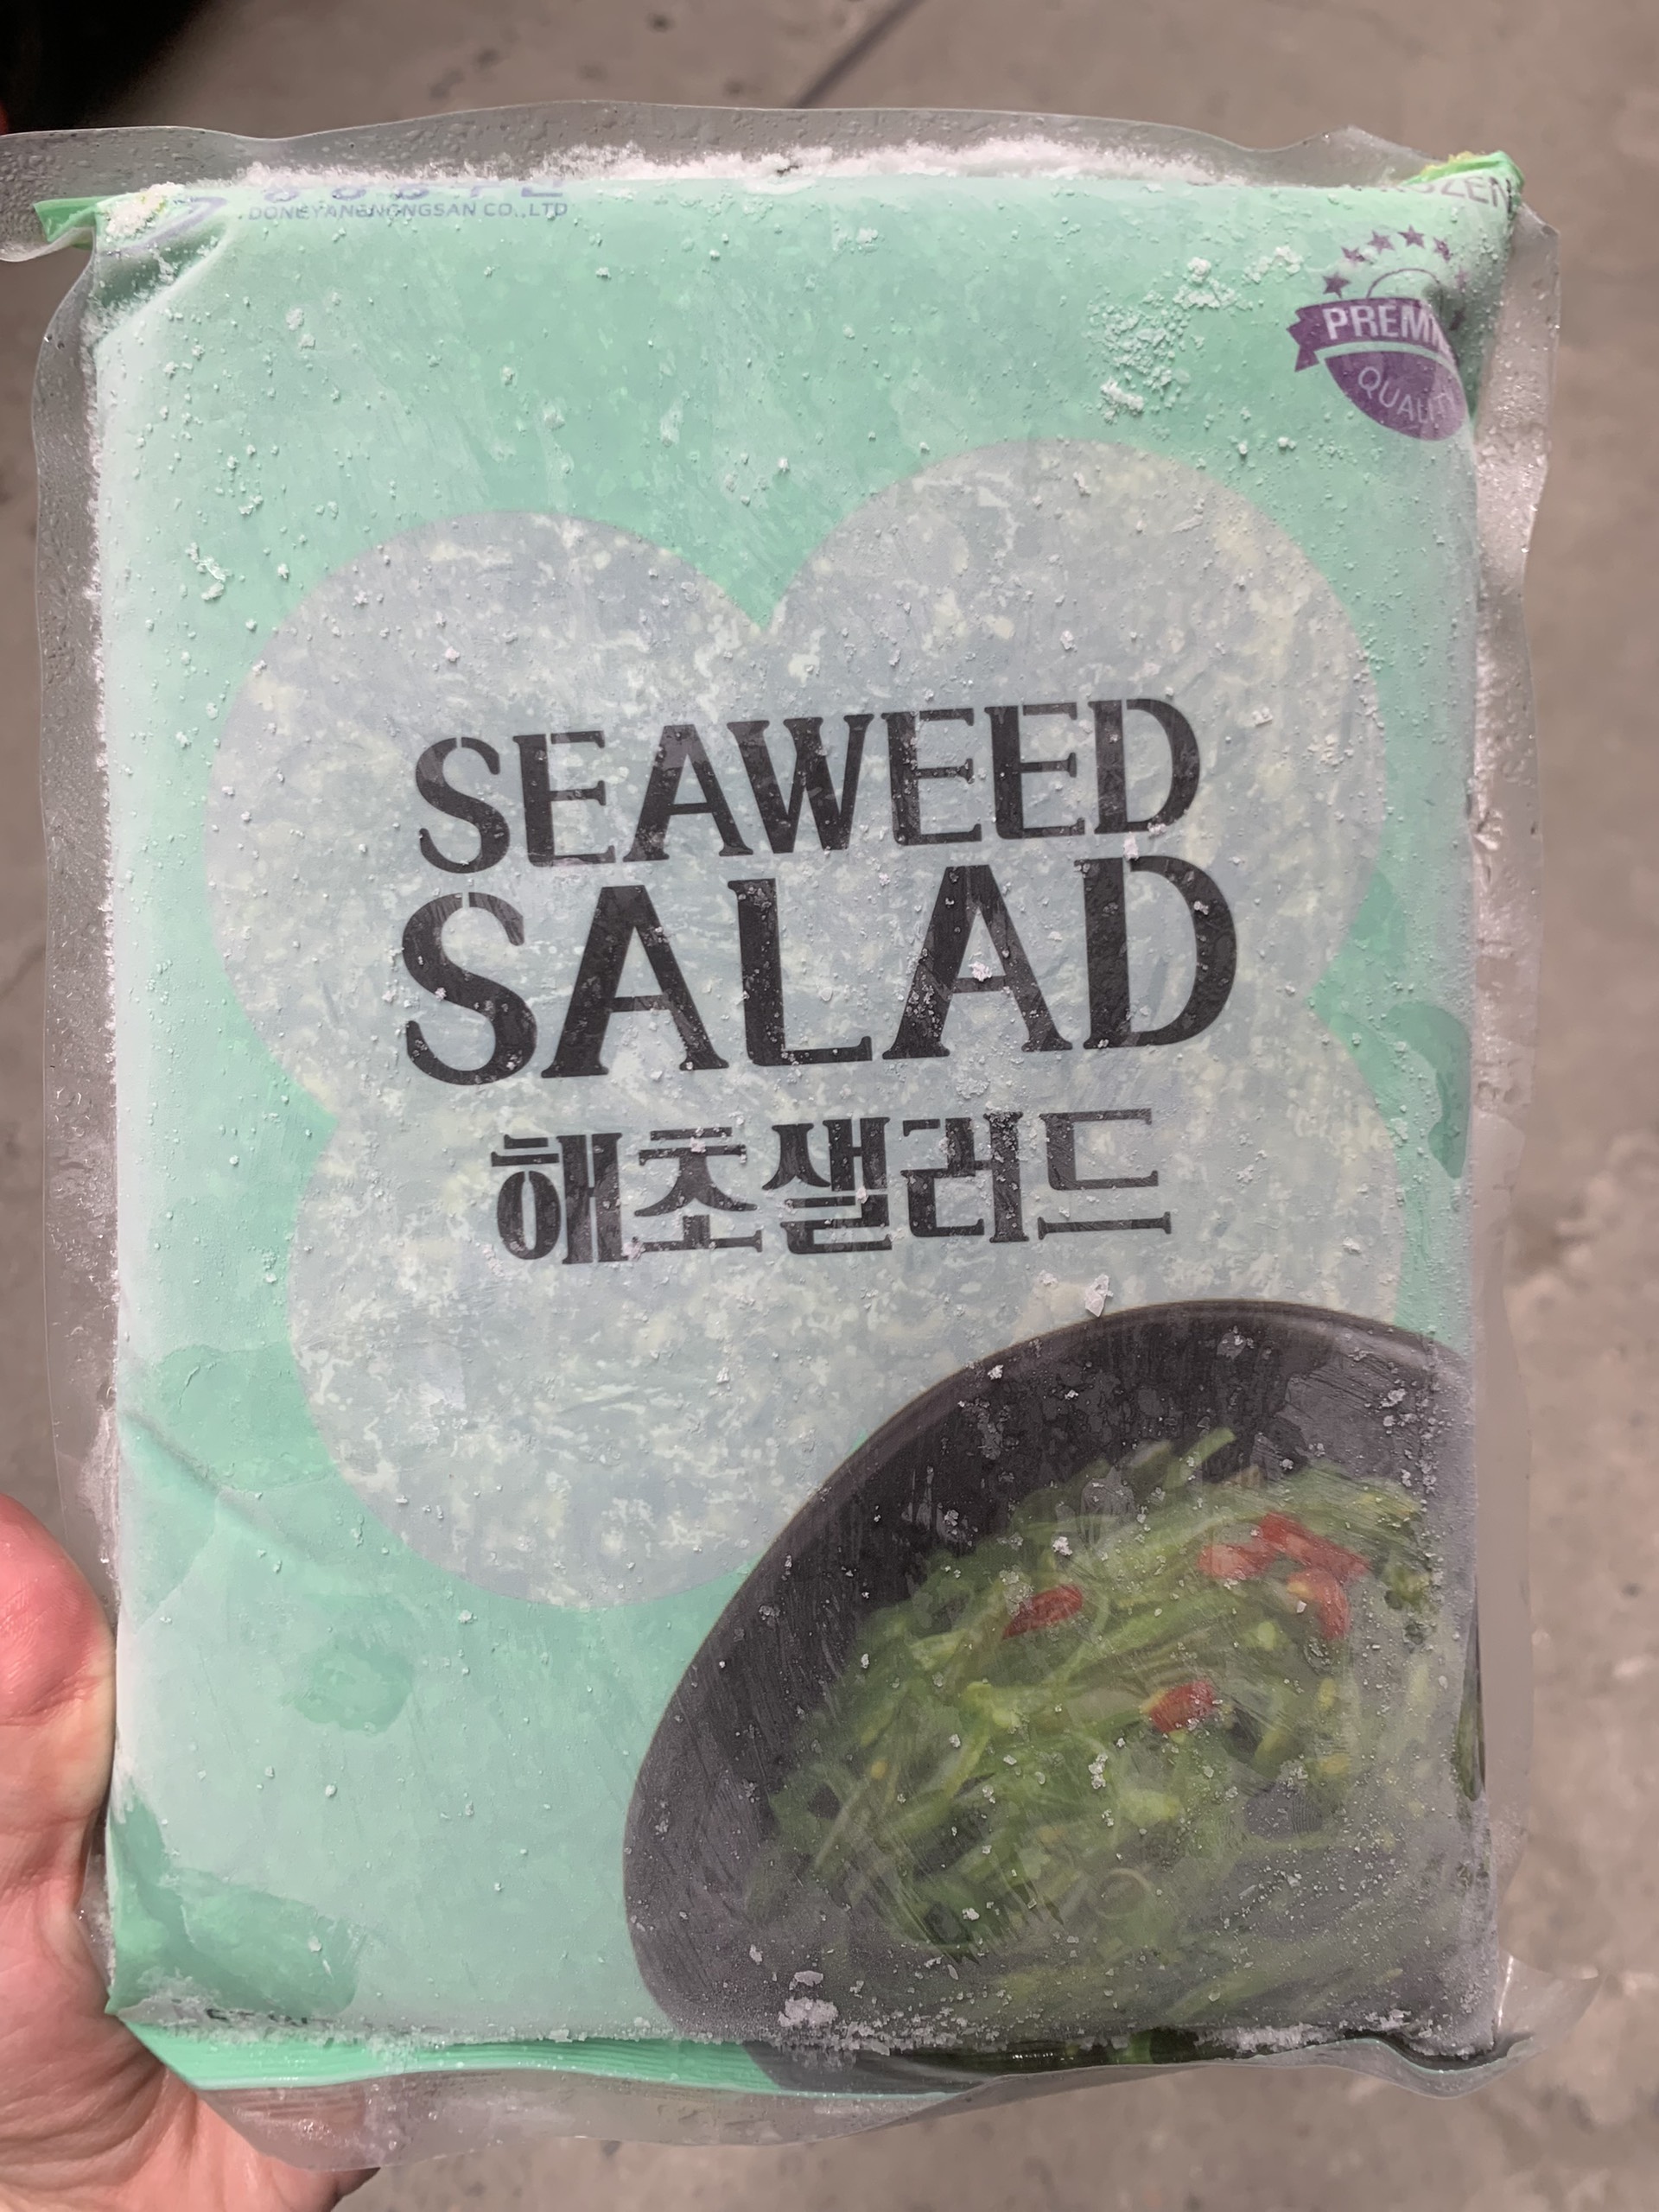 Rong biển tươi Hàn Quốc 1kg, Làm salad siêu ngon Giao hàng hỏa tốc 2h tại